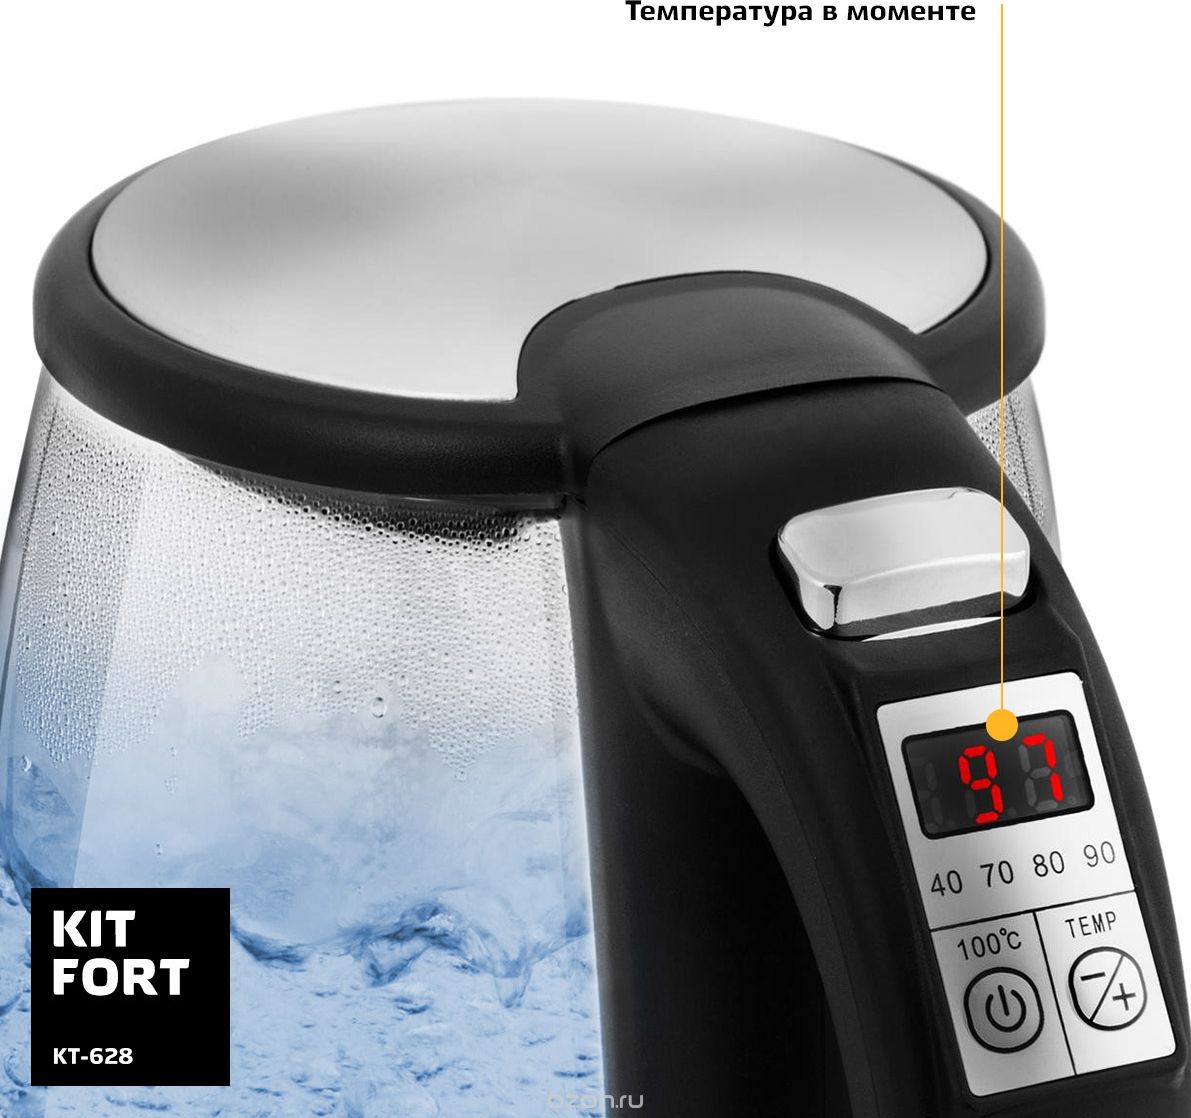   Kitfort -628, Grey Metallic